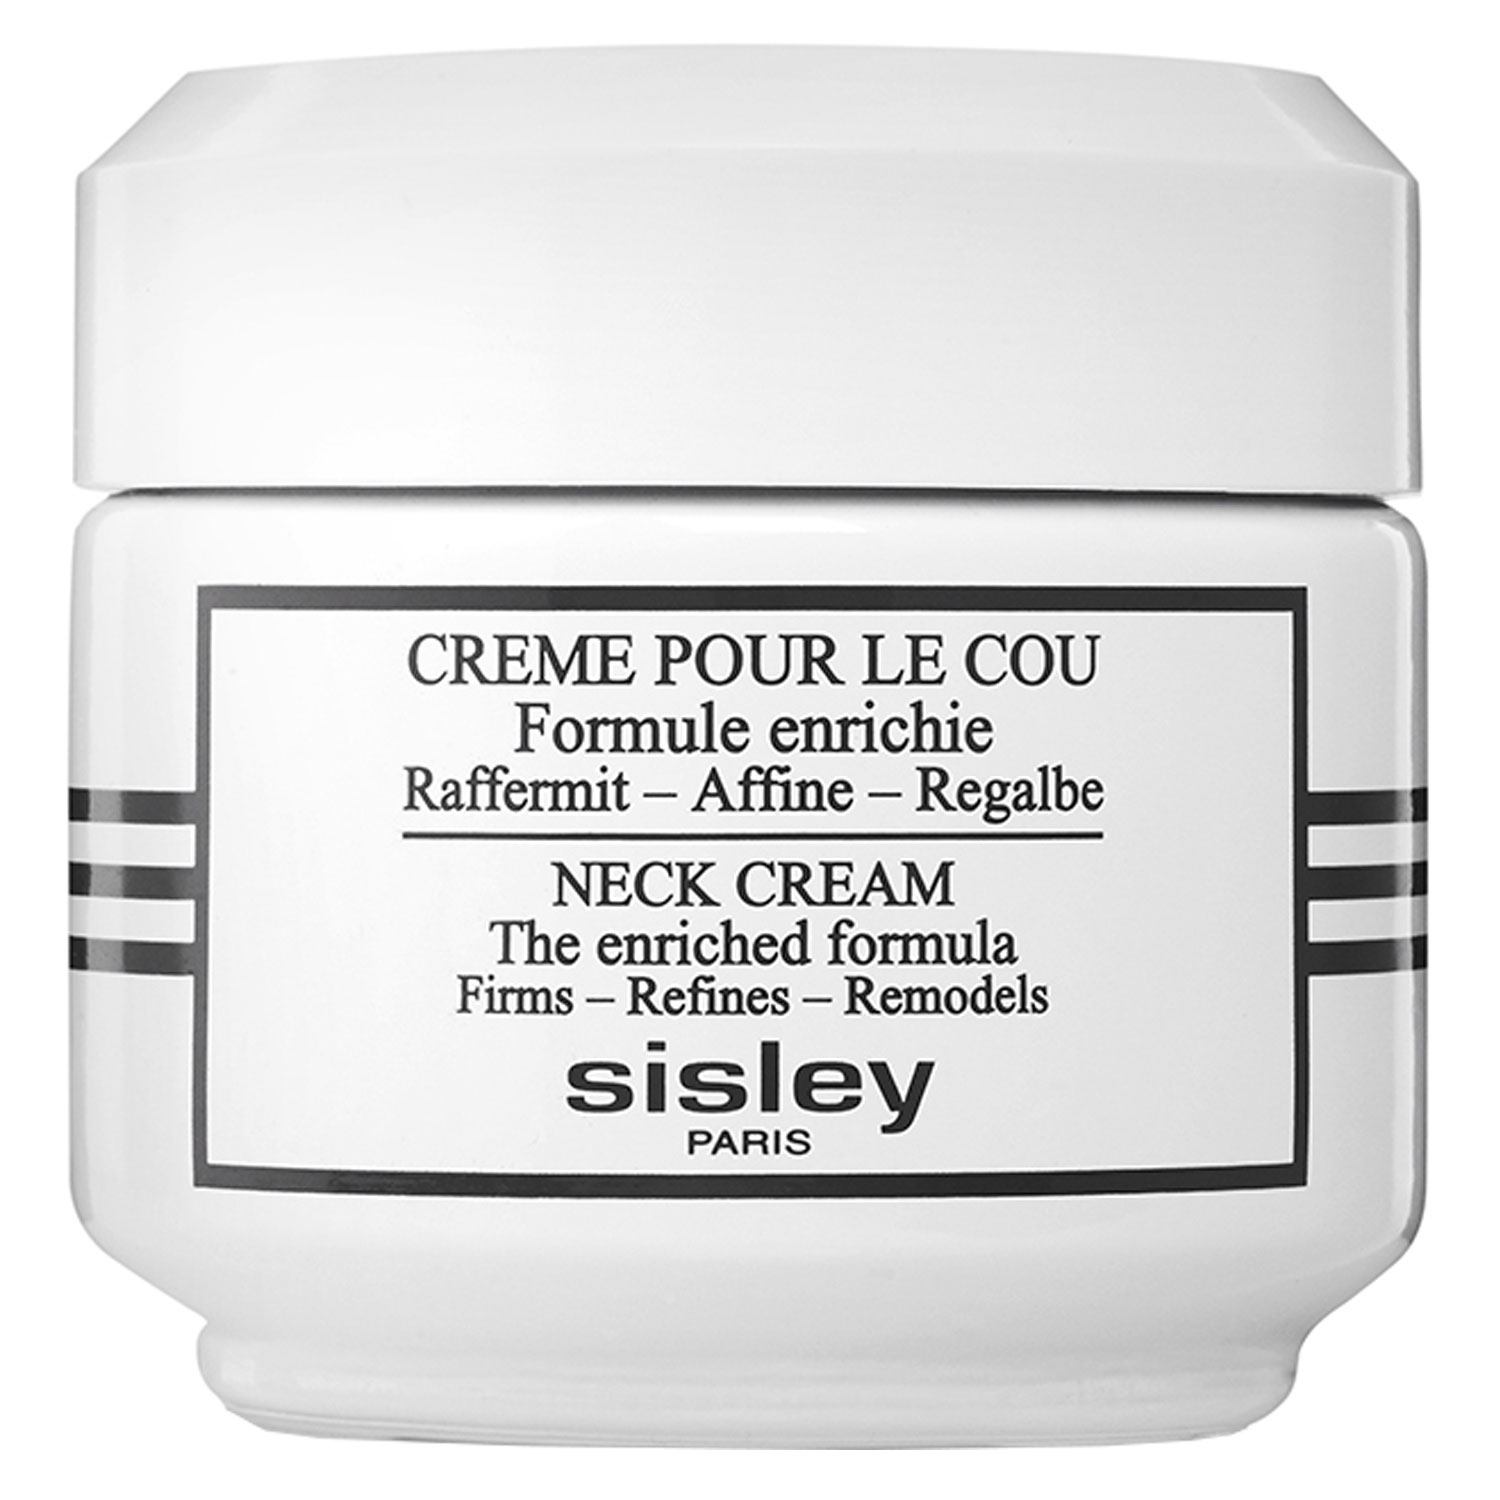 Image du produit de Sisley Skincare - Crème pour le Cou Formule Enrichie